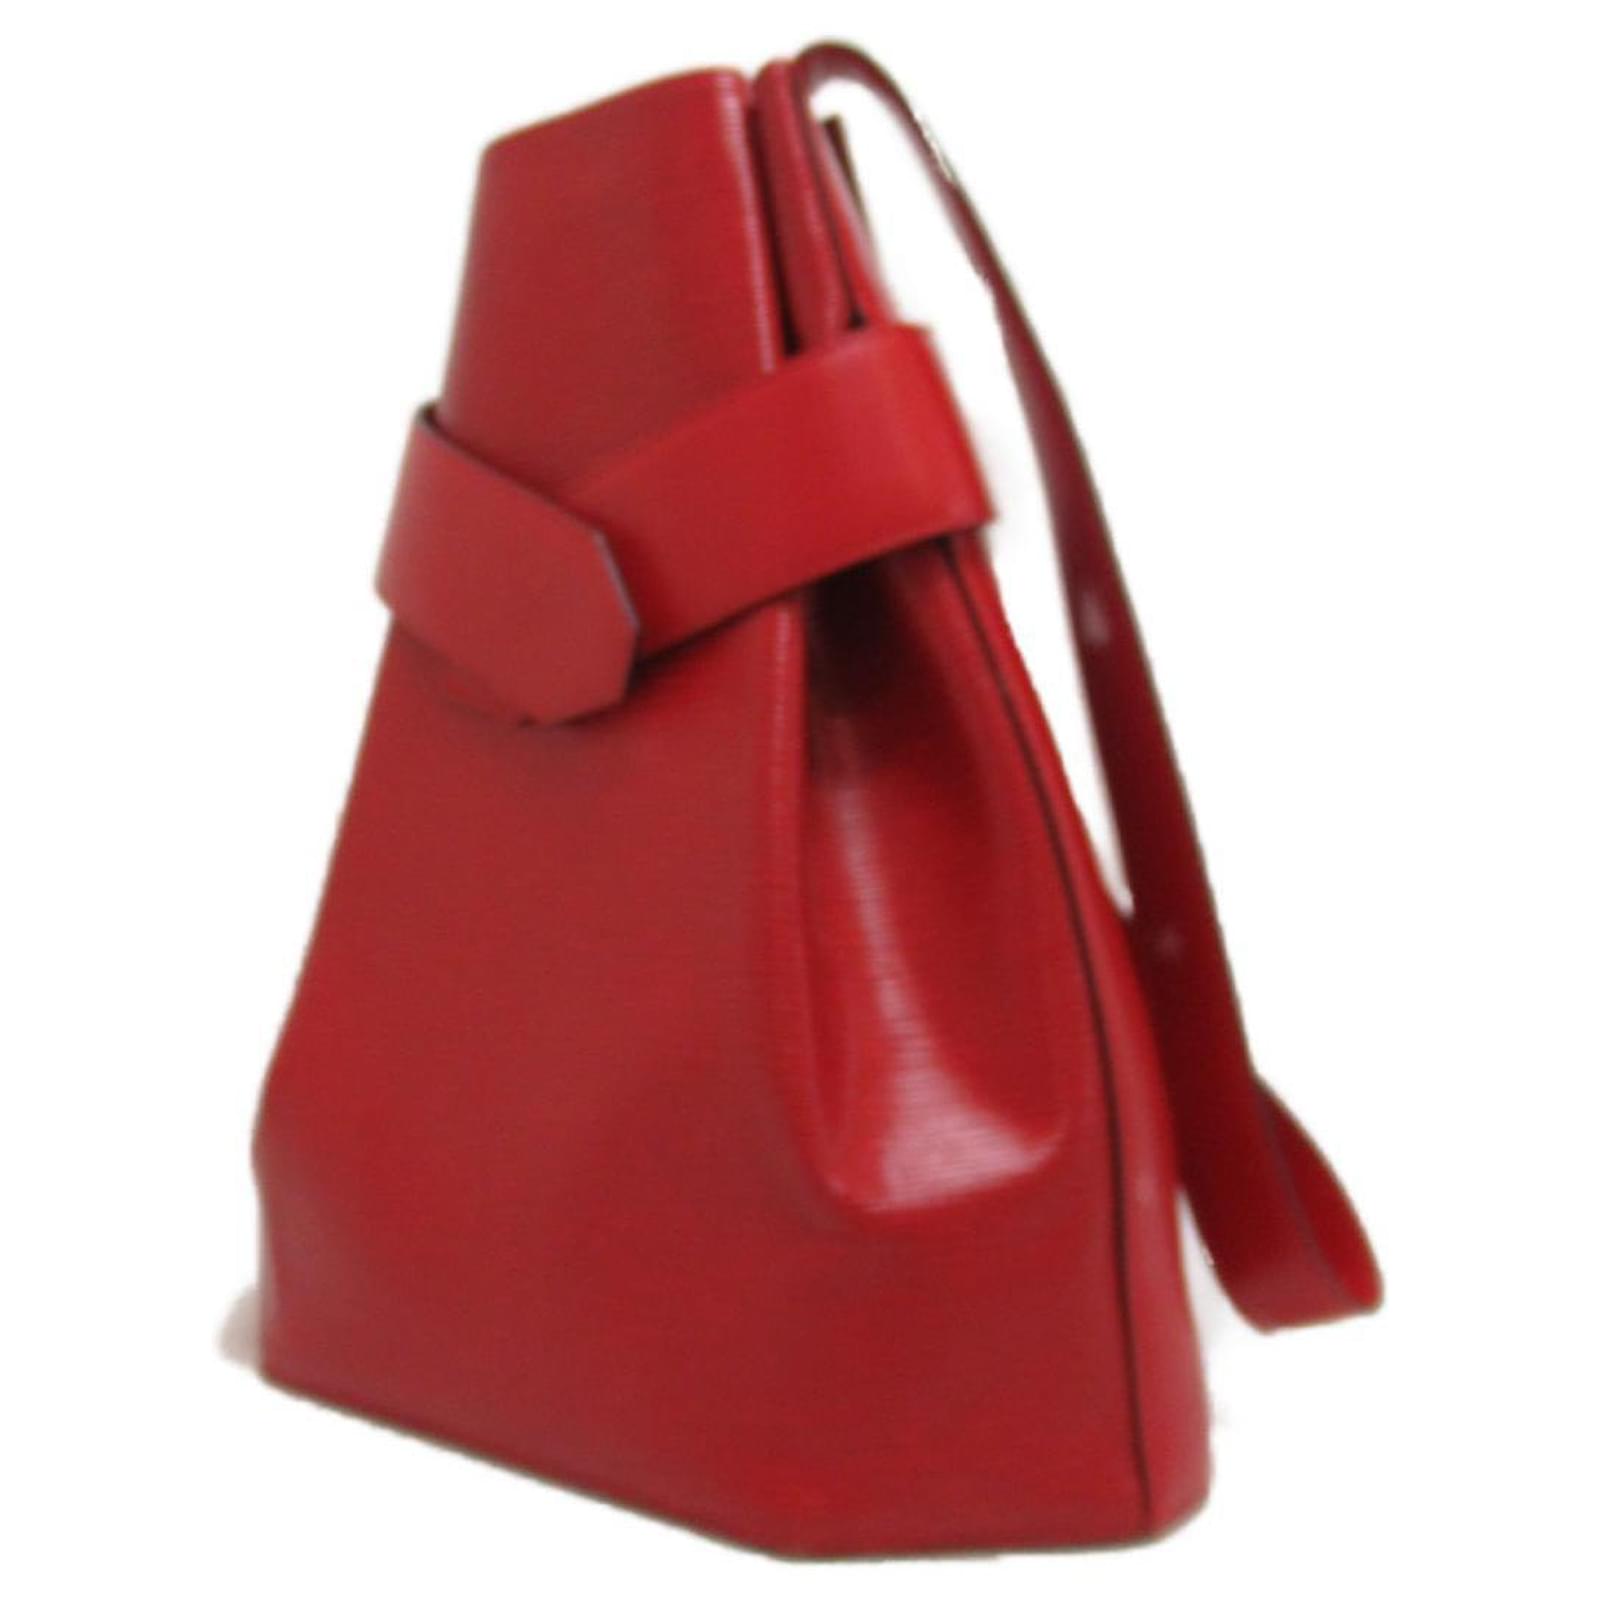 Louis Vuitton Epi Sac De Paule M80197 Red Leather Pony-style